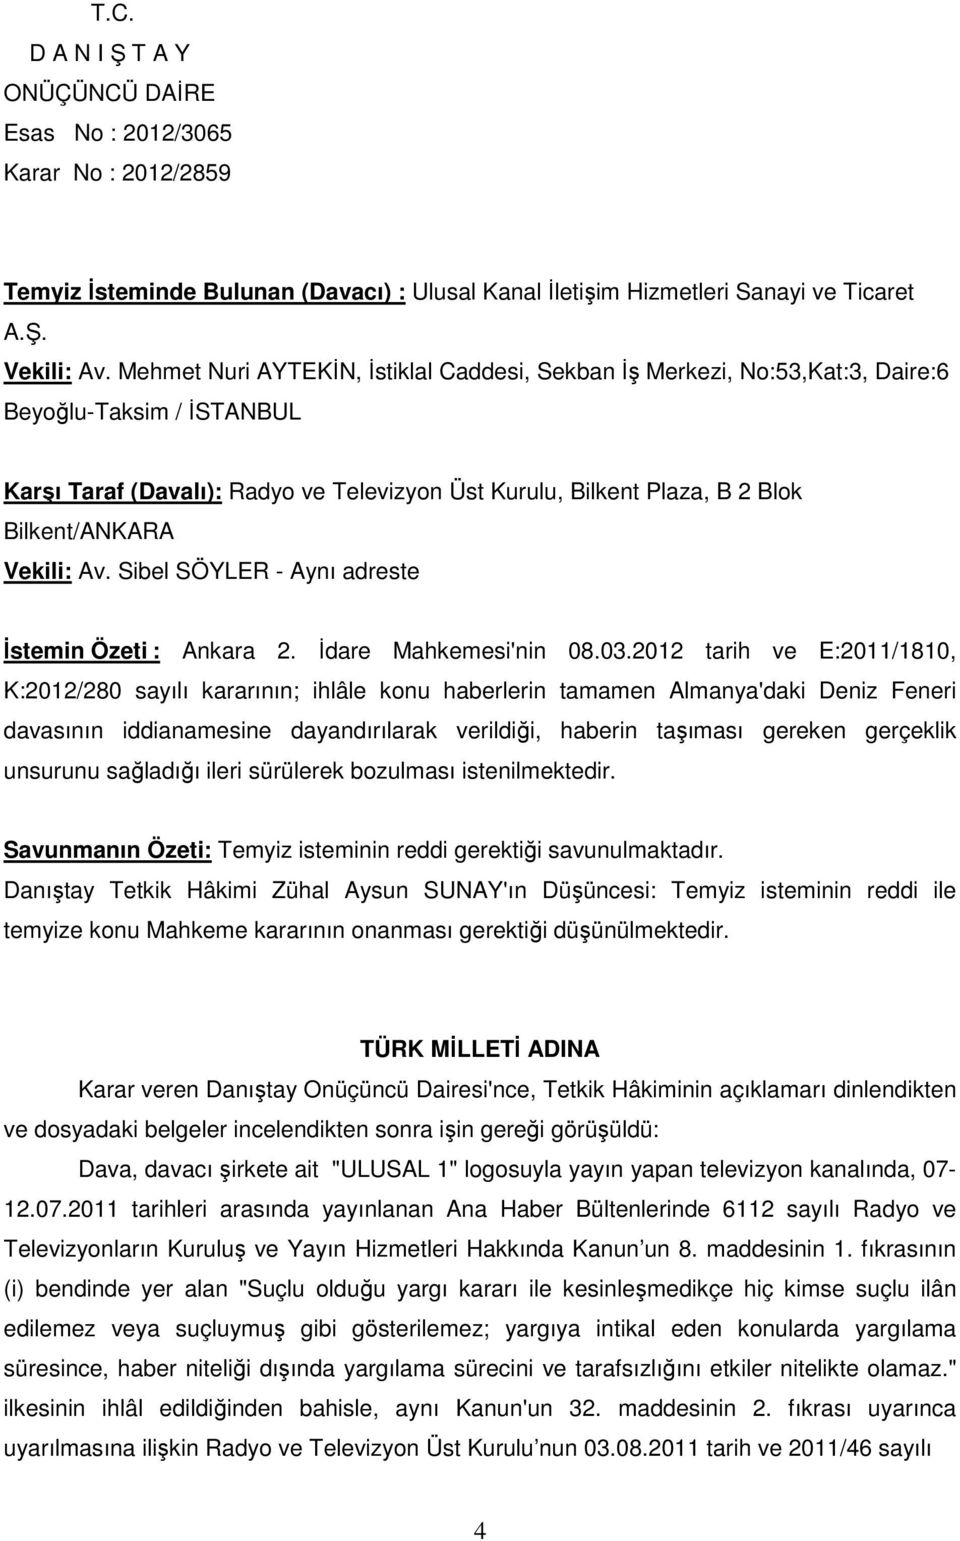 Av. Sibel SÖYLER - Aynı adreste İstemin Özeti : Ankara 2. İdare Mahkemesi'nin 08.03.